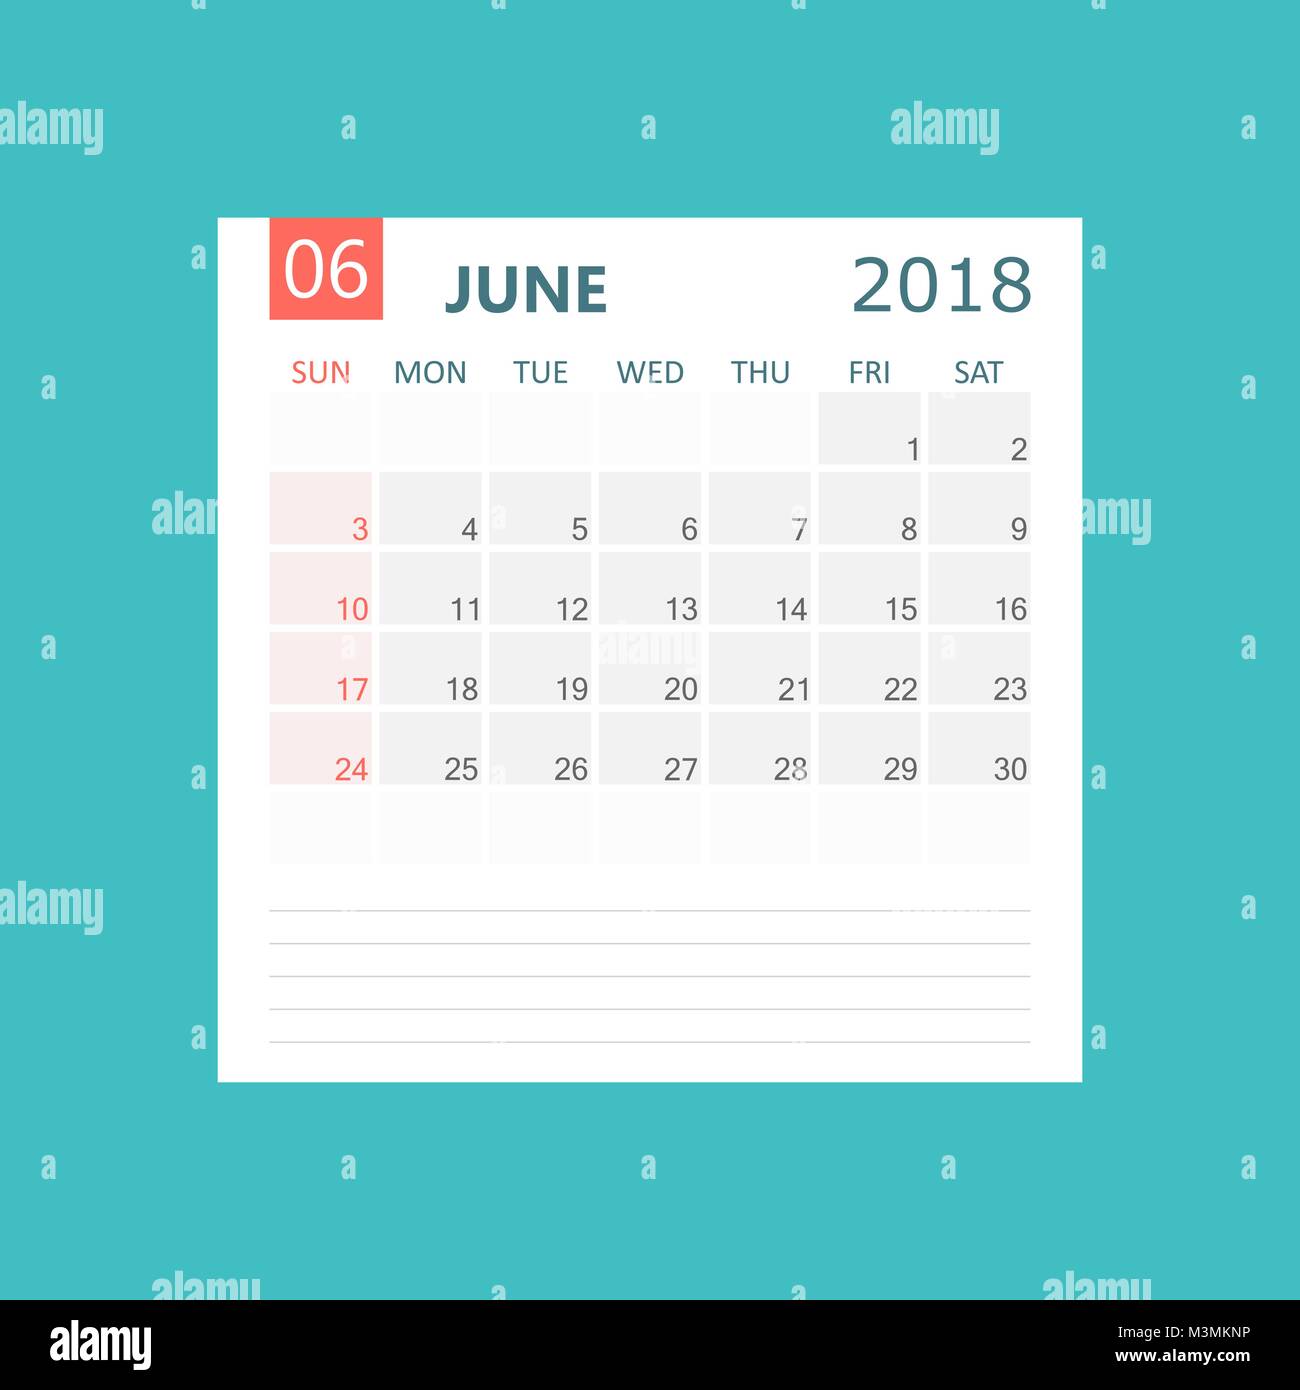 june-2018-calendar-calendar-planner-design-template-week-starts-on